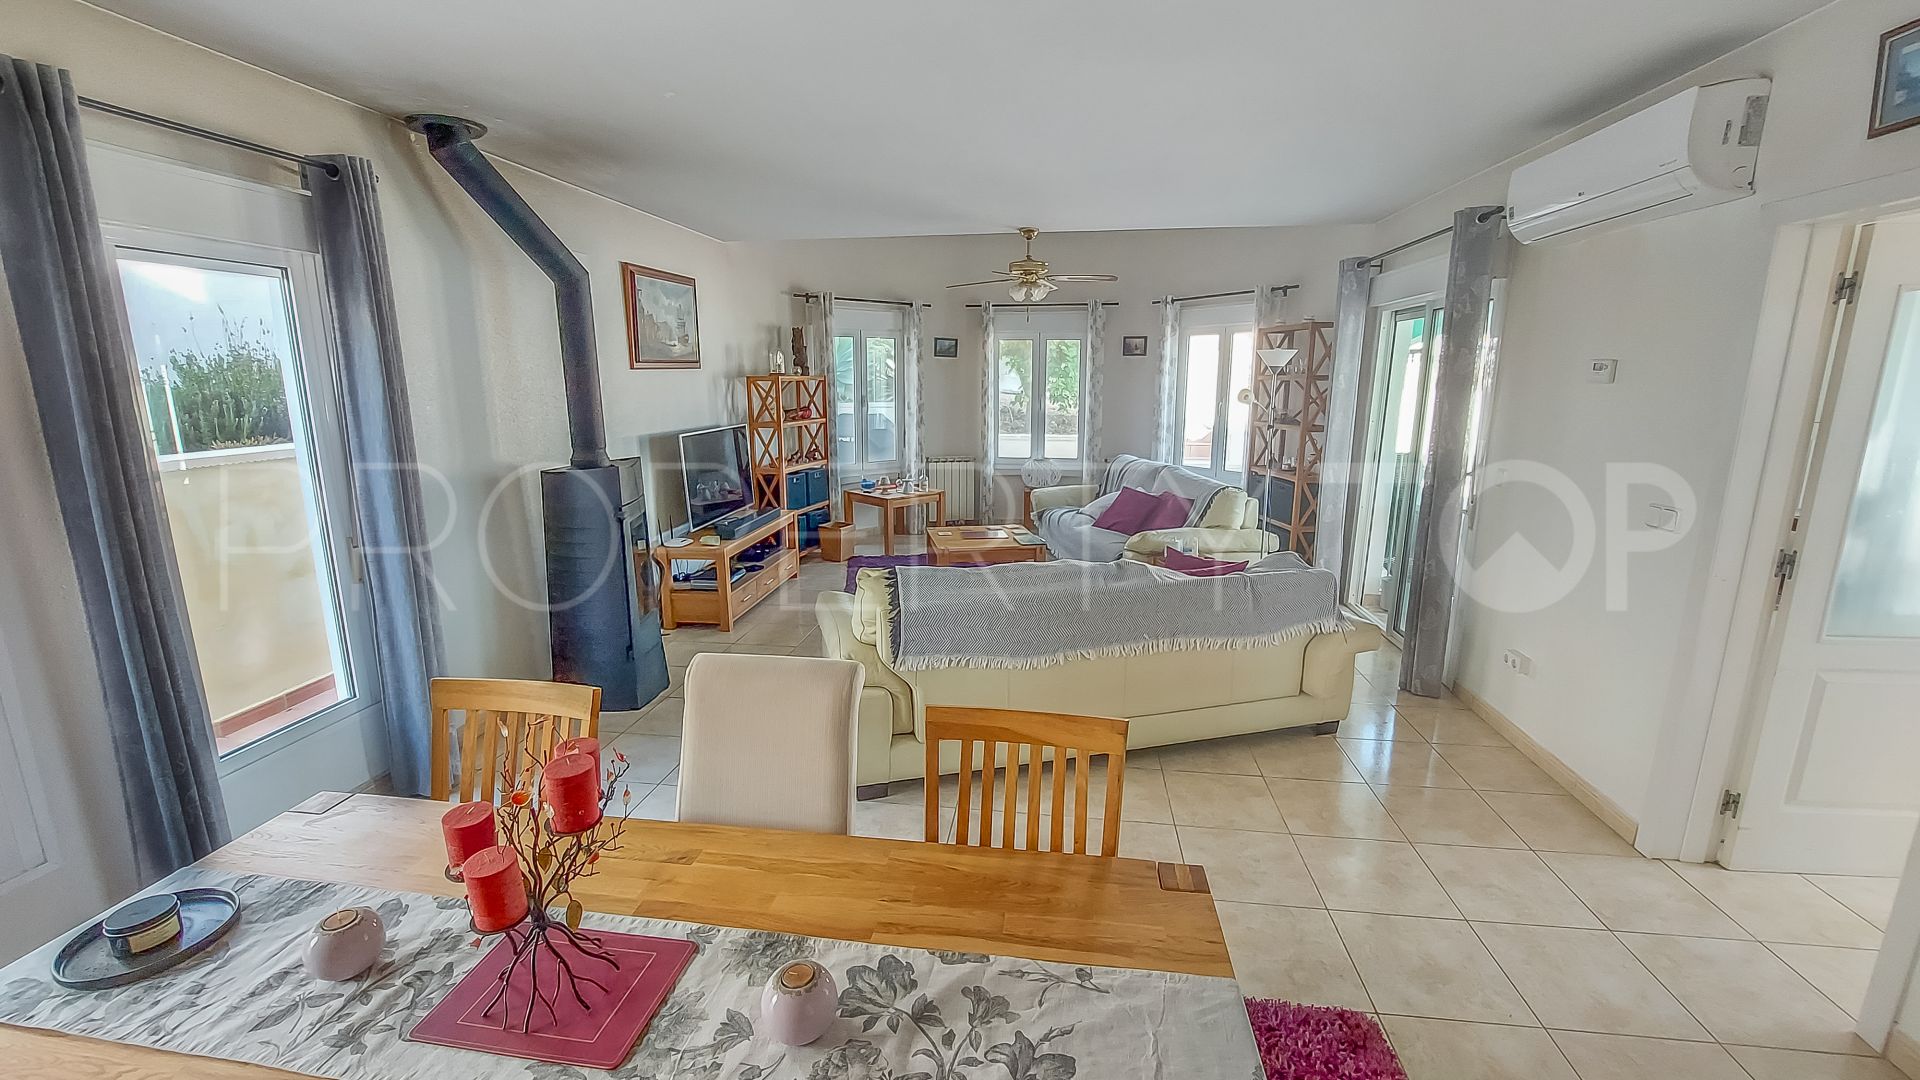 3 bedrooms villa in Gata de Gorgos for sale